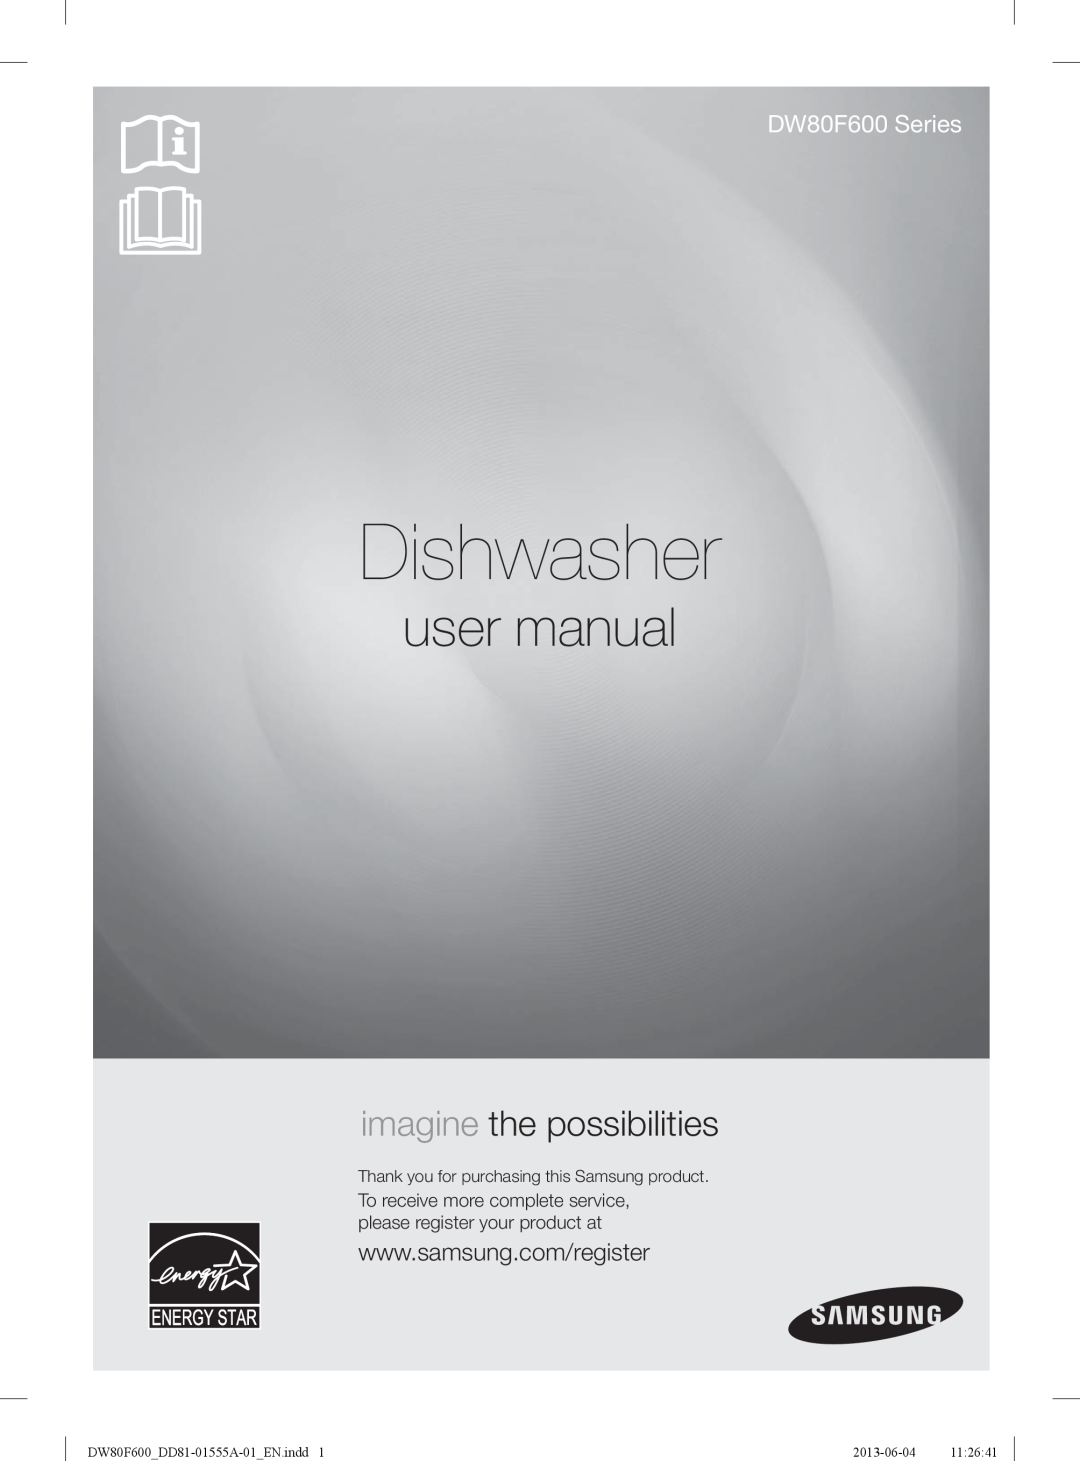 Samsung DW80F600UTW user manual Dishwasher, imagine the possibilities, DW80F600 Series, DW80F600DD81-01555A-01EN.indd 